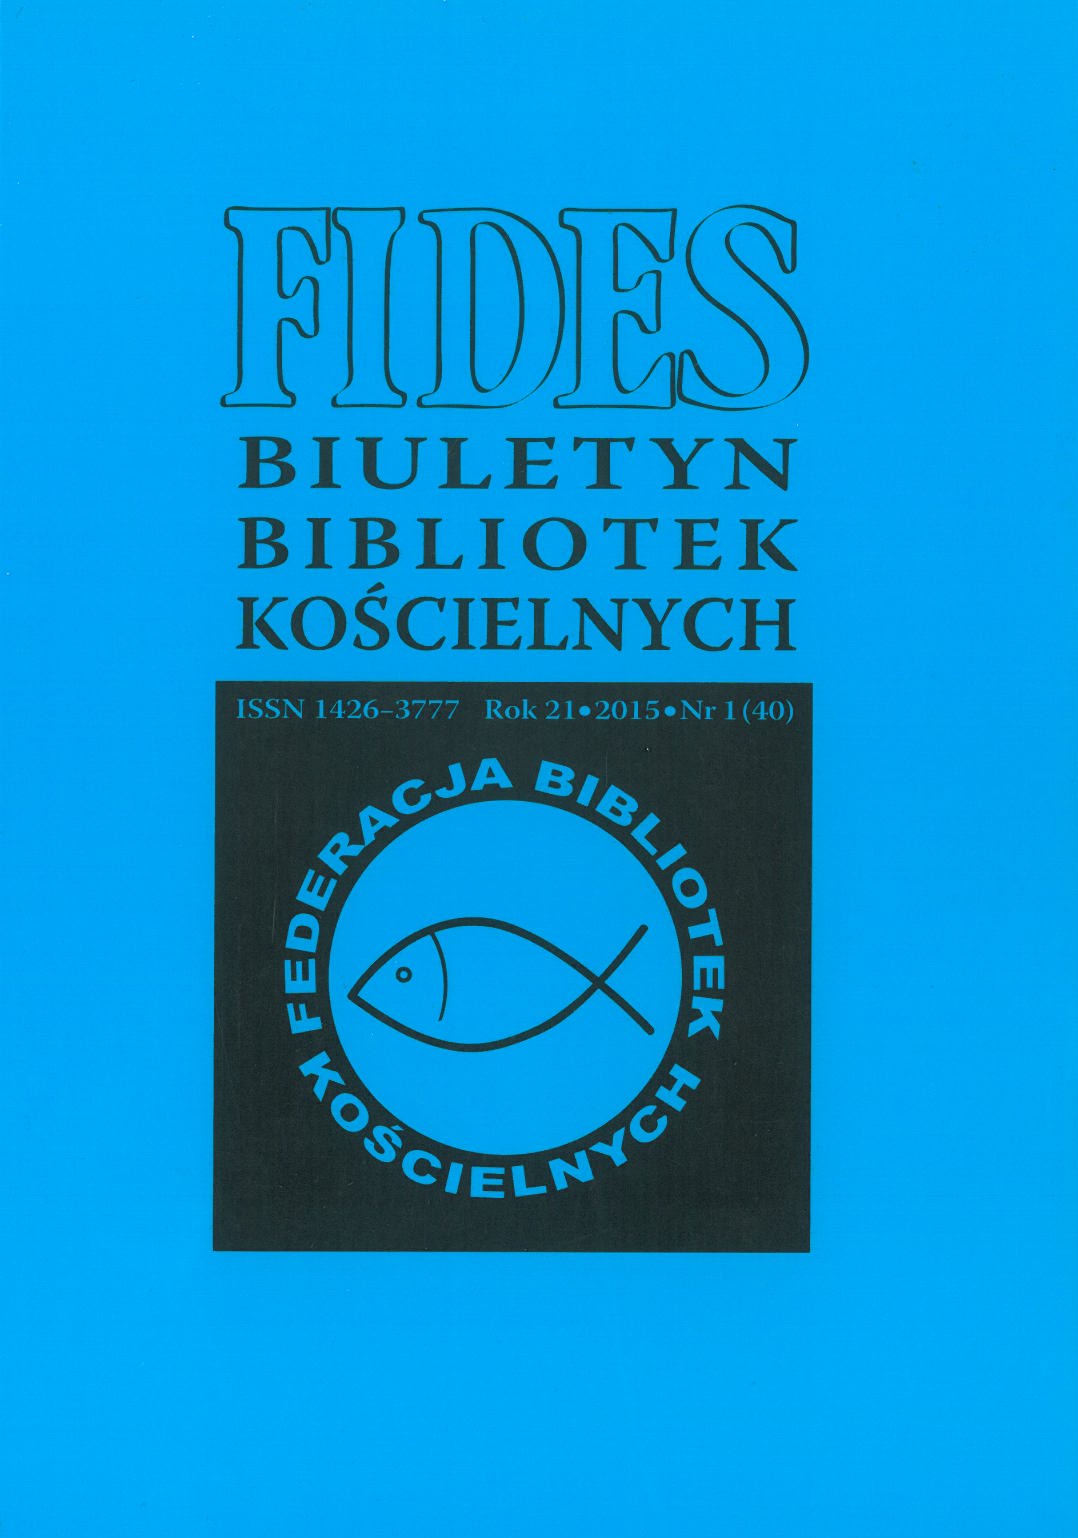 Książka szkolna w lwowskich szkołach i gimnazjach w latach dwudziestych i trzydziestych XX wieku